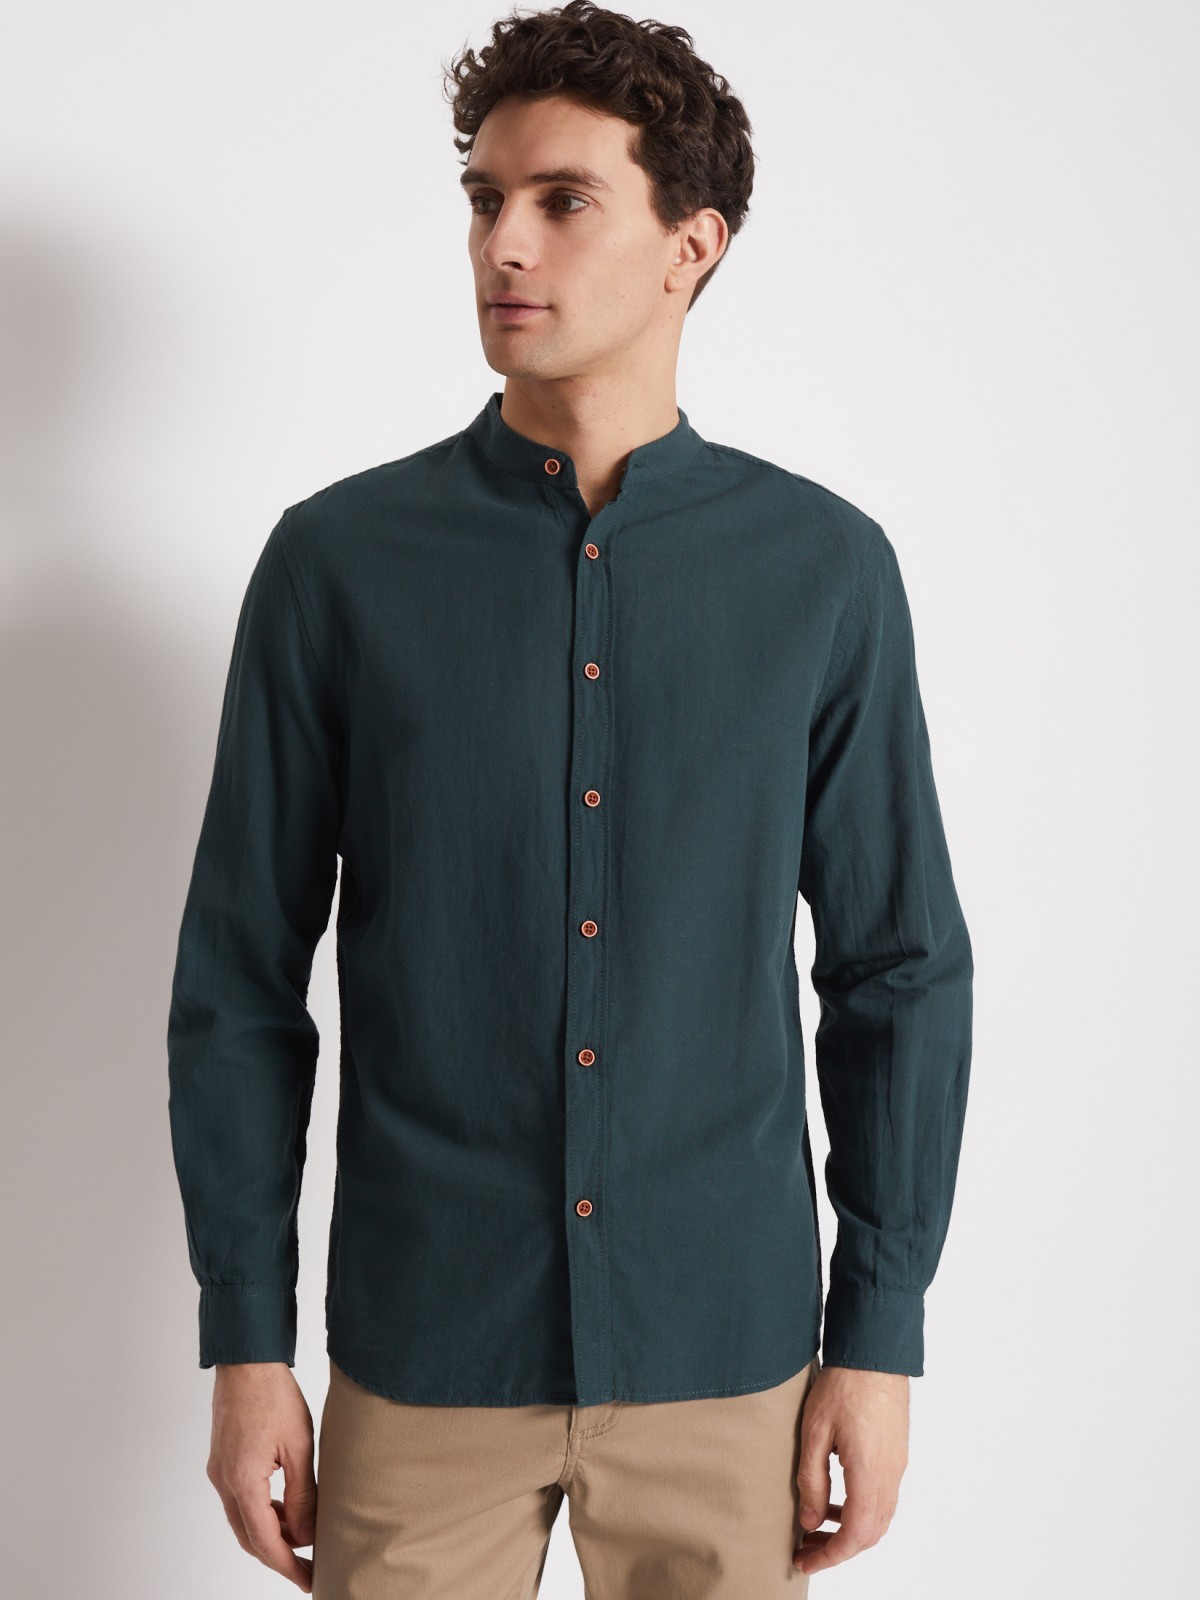 Рубашка с длинным рукавом zolla 012232159063, цвет зеленый, размер S - фото 5